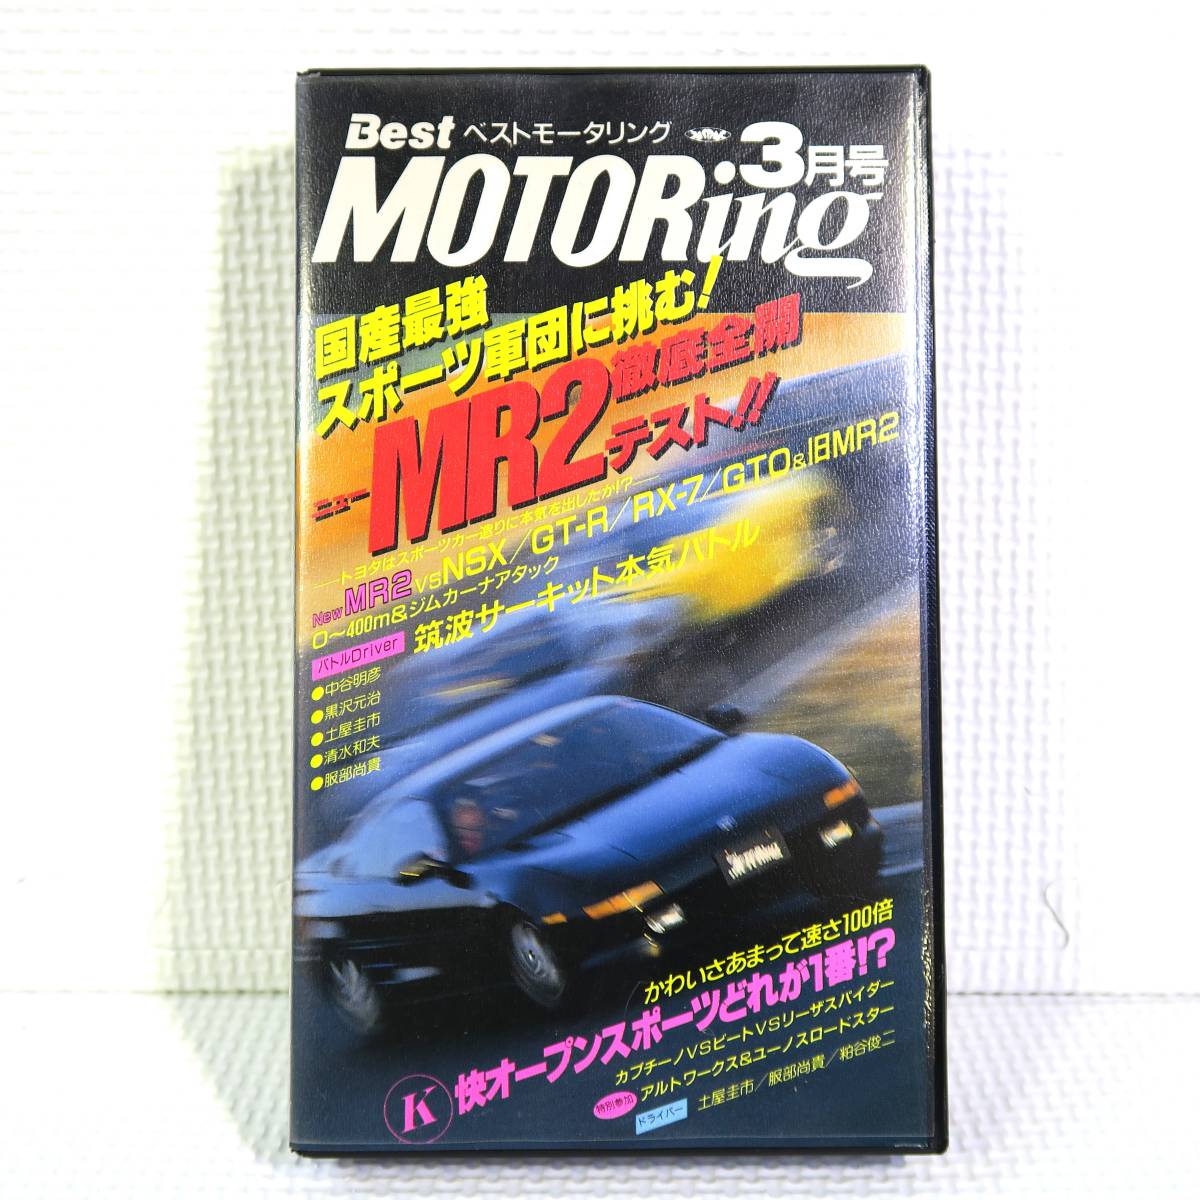 Best MOTORing Best Motoring 3 месяц номер 1992.3 SW20 новый MR2 тщательный открыть настежь тест!! VHS видеолента б/у Junk анонимность кошка pohs бесплатная доставка 